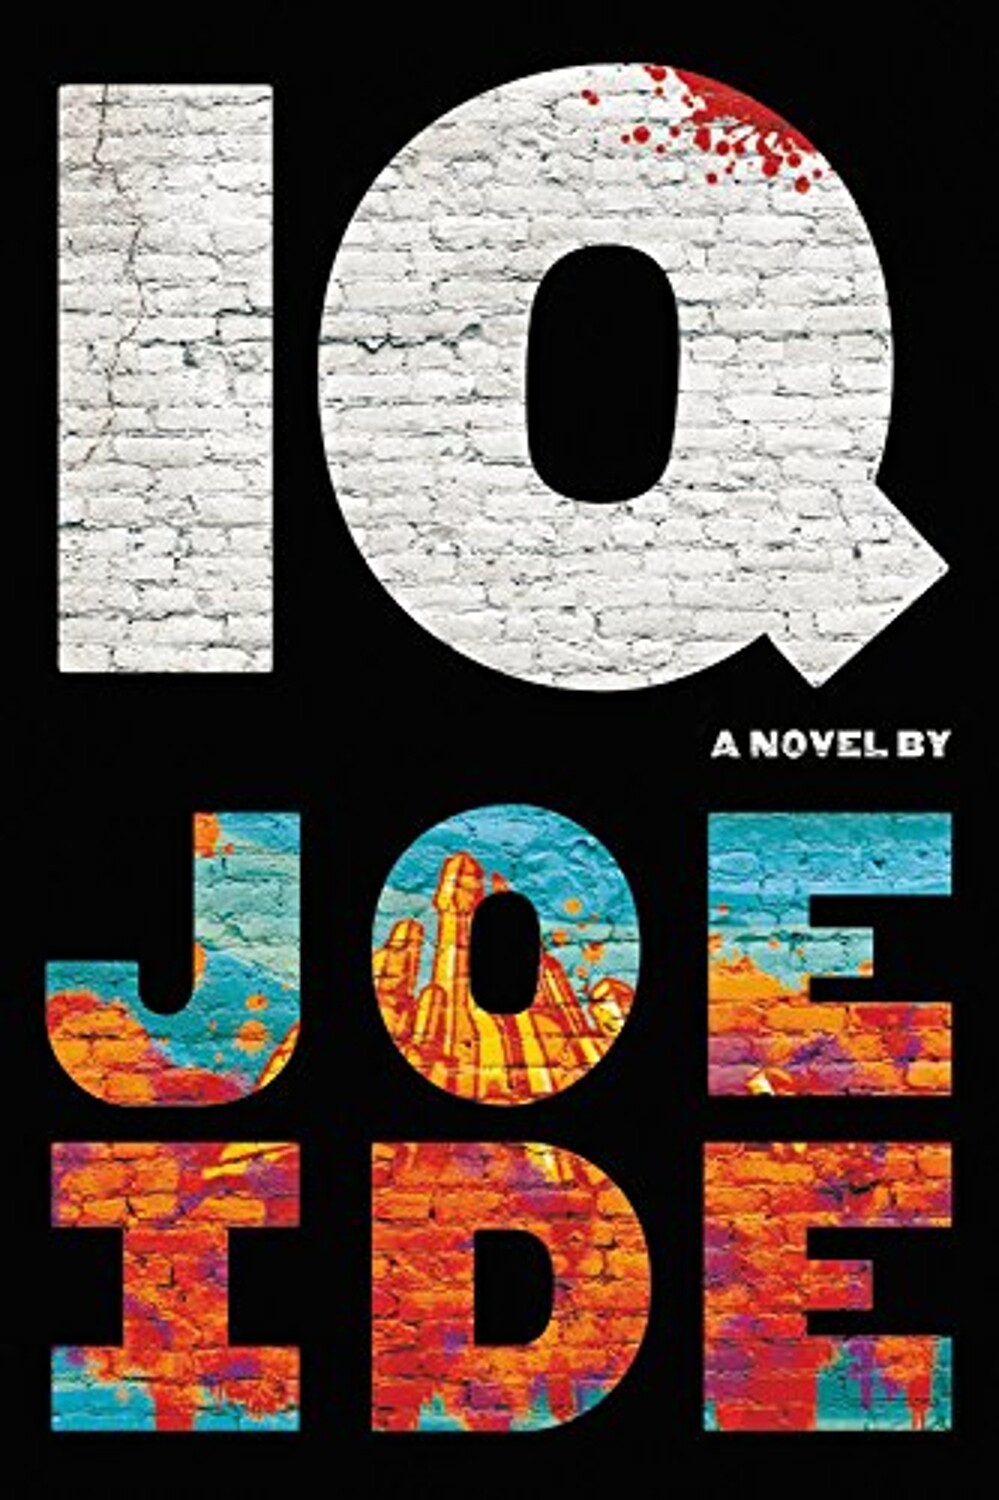 IQ Novel by Joe Ide